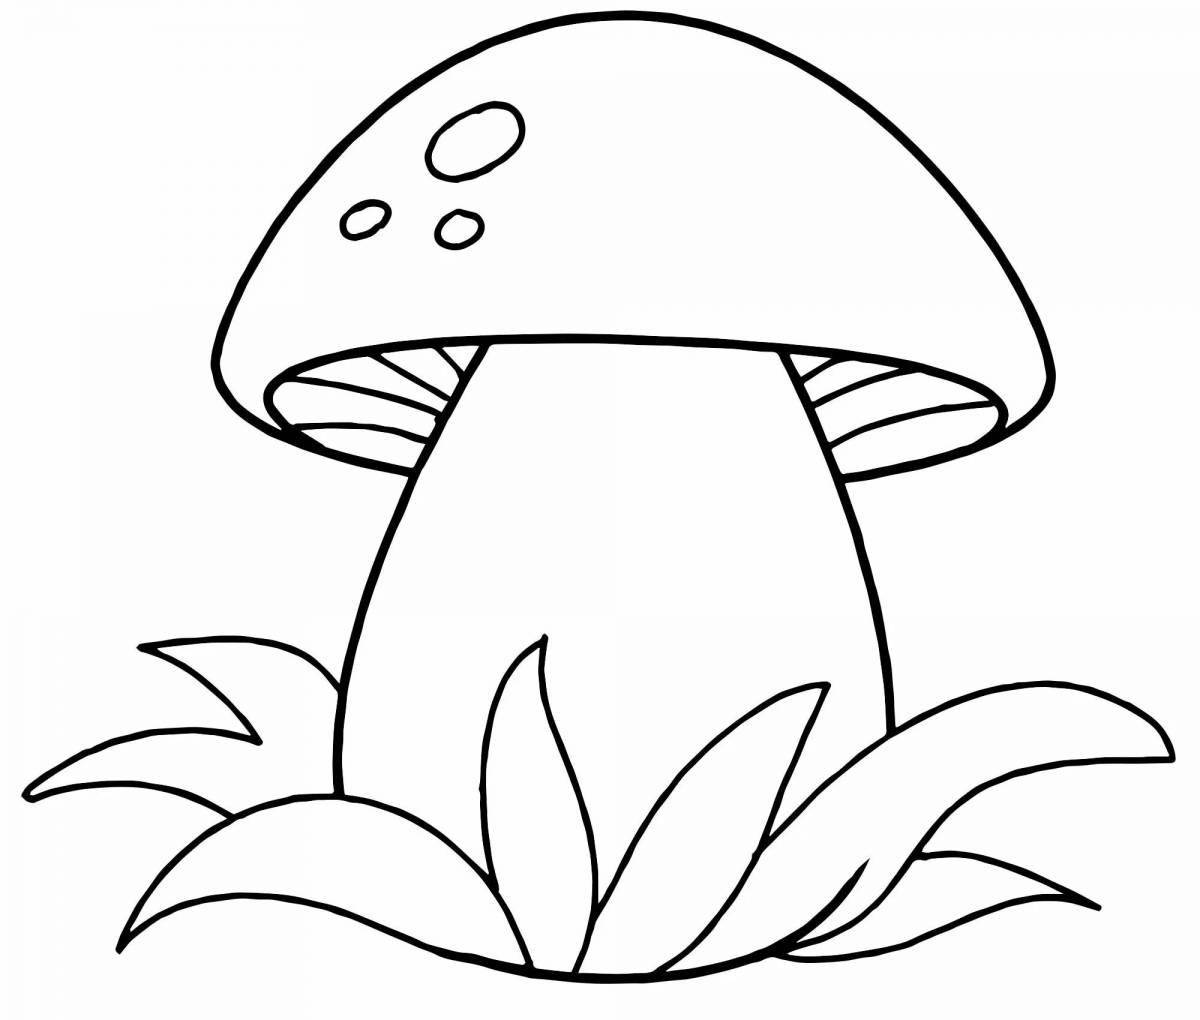 Изысканная раскраска грибов для детей 4-5 лет